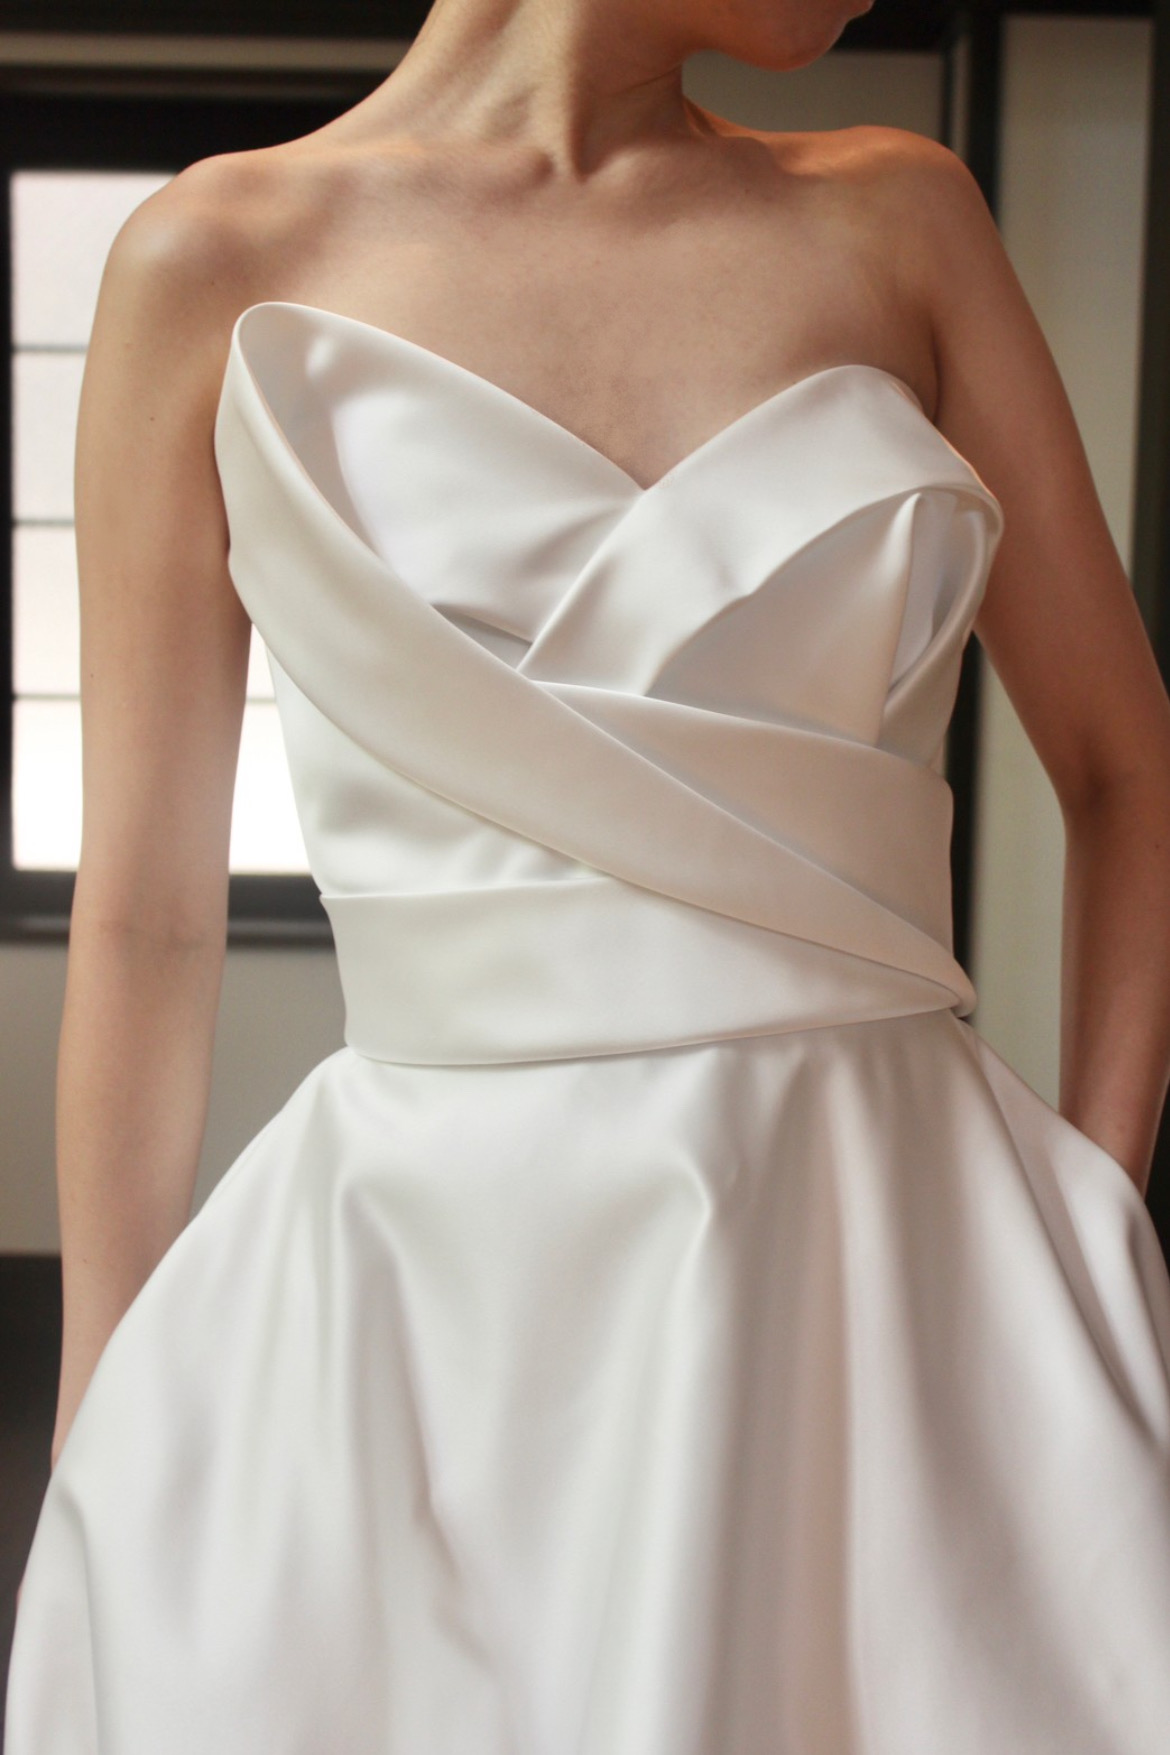 胸元の立体的なデザインが特徴的なデコルテを美しく見せてくれるサテンAラインのウェディングドレス